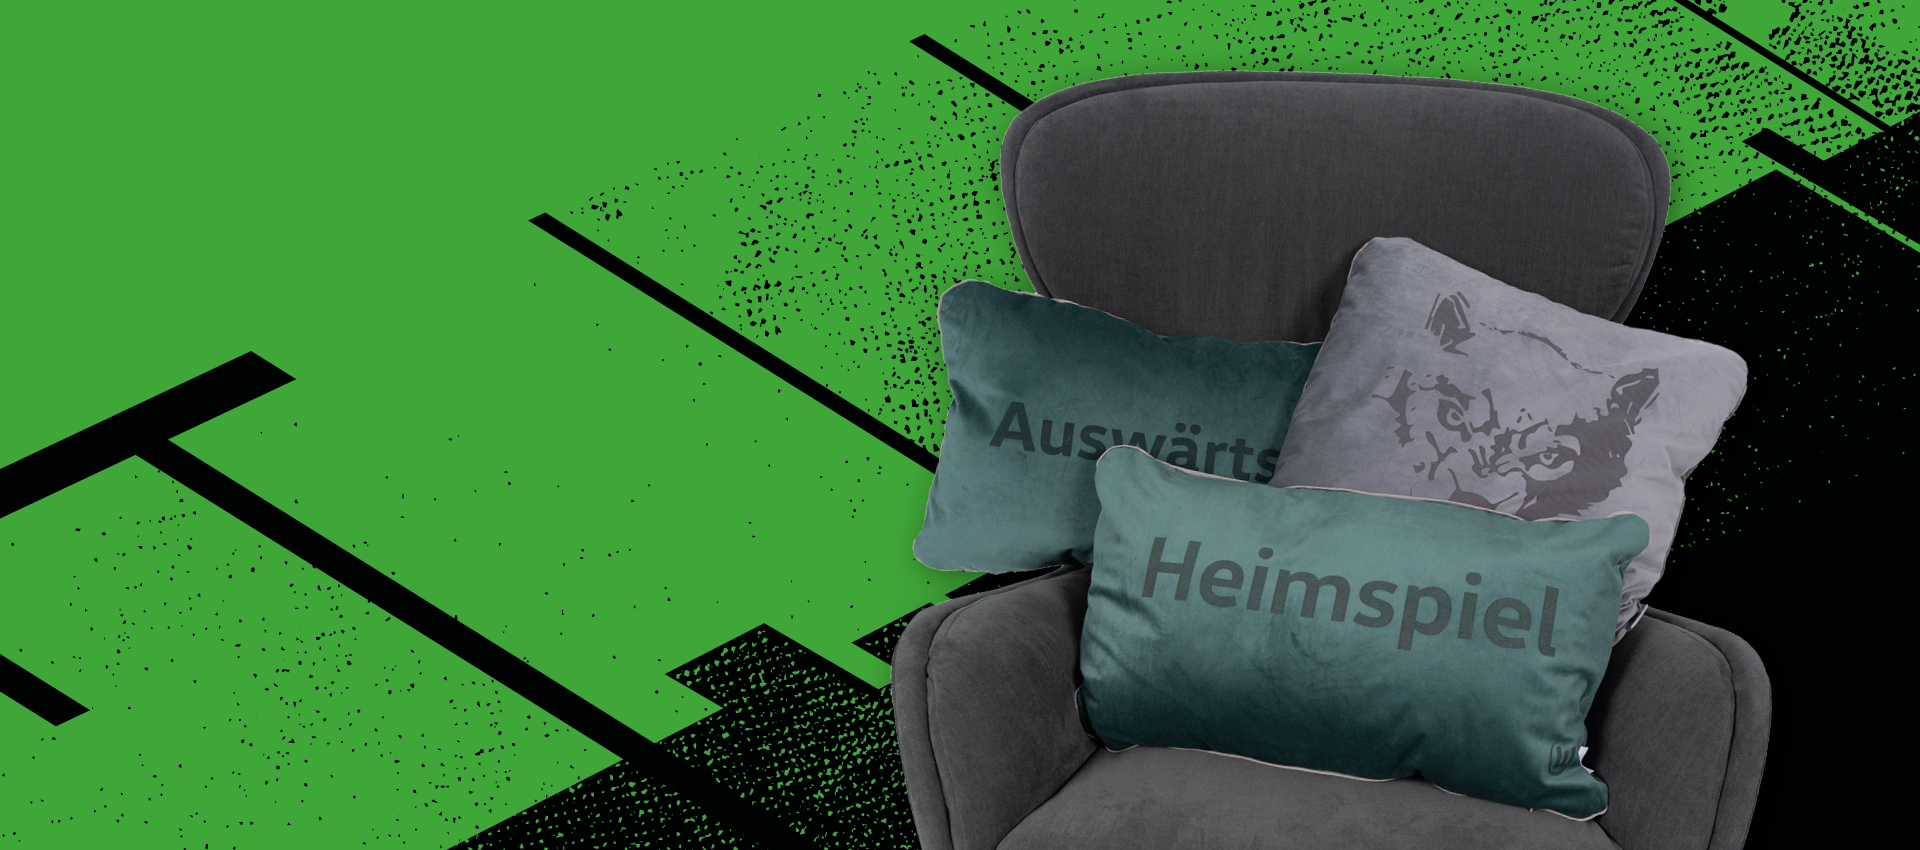 Bewerbungsgrafik Sessel mit drei VfL Wolfsburg Kissen darauf